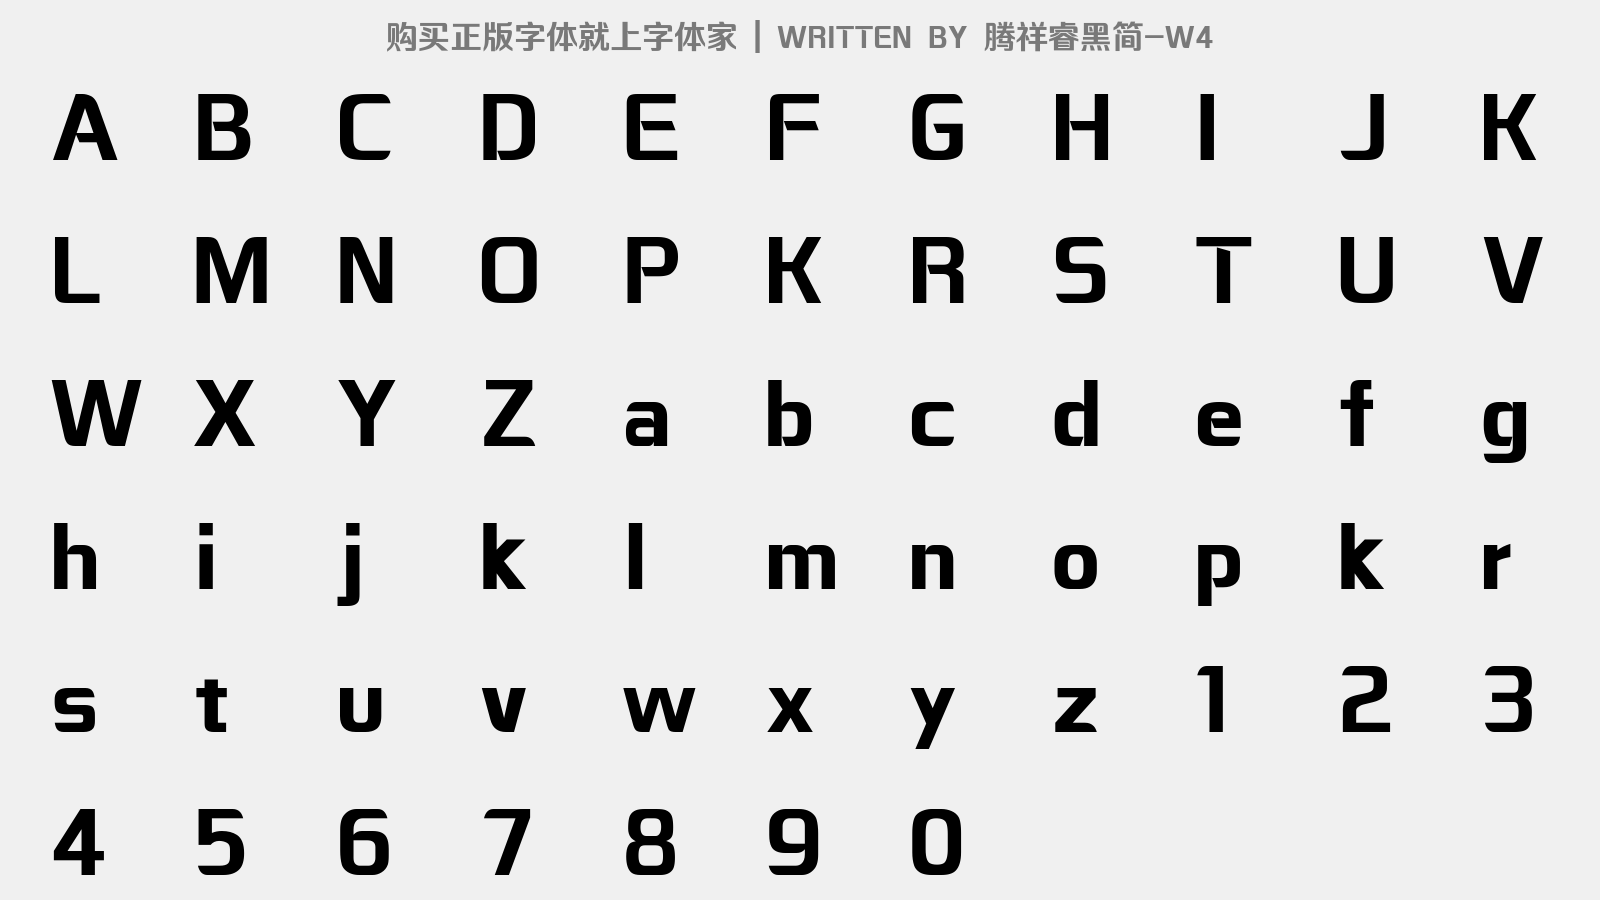 腾祥睿黑简-W4 - 大写字母/小写字母/数字